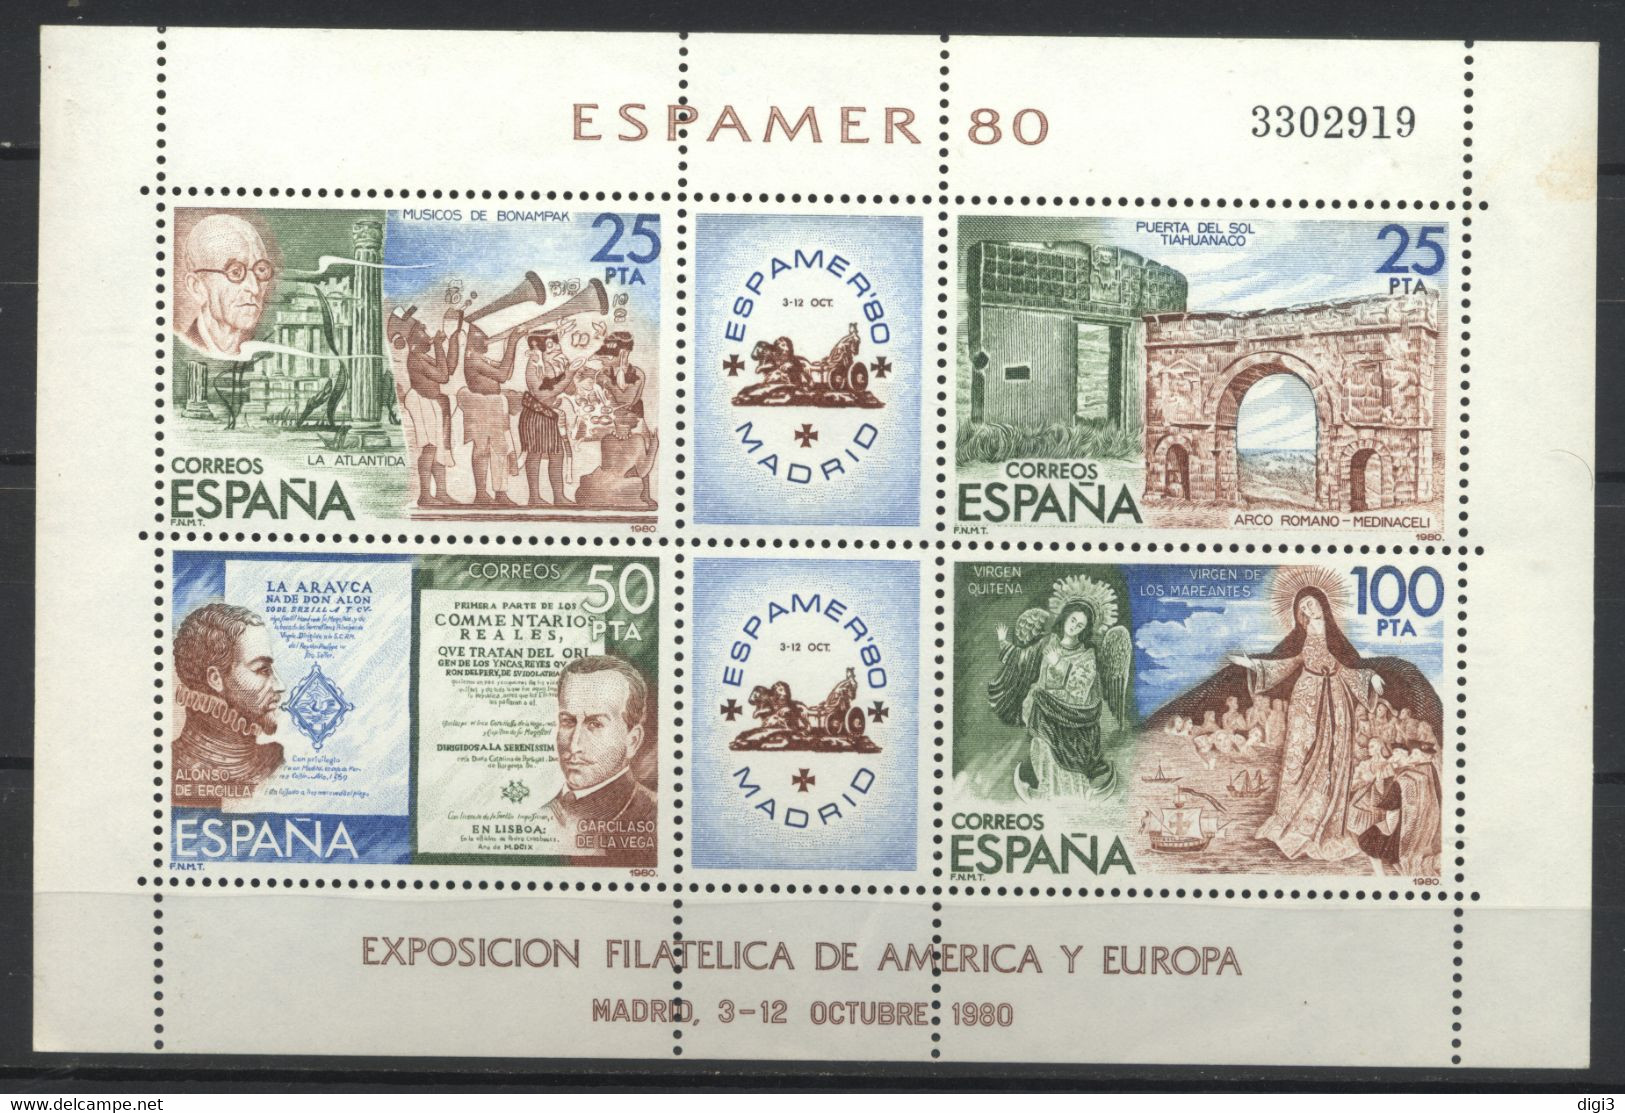 España, 1980, Exposiciòn Filatélica De América Y Europa, ESPAMER 80, Hojita, MNH** - Fogli Ricordo